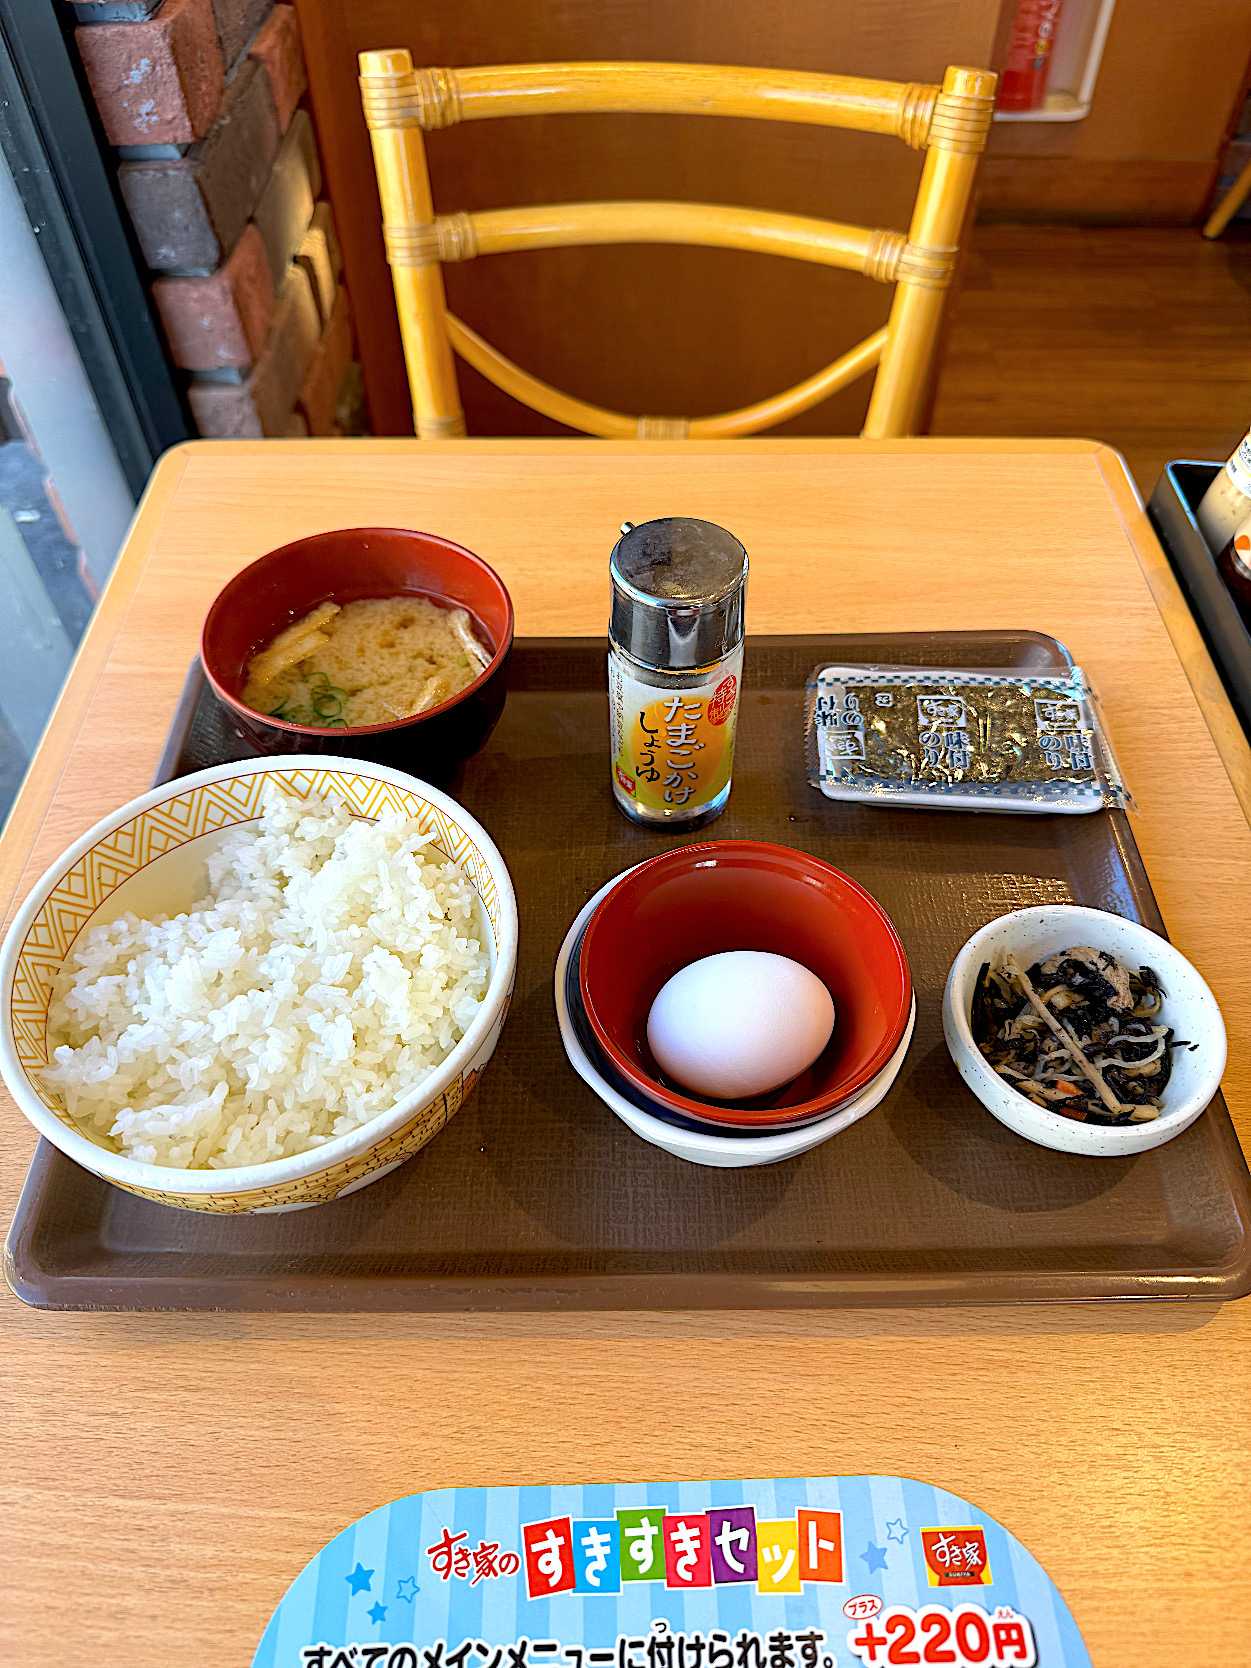 すき家のオススメのモーニングメニュー「たまかけ朝食」